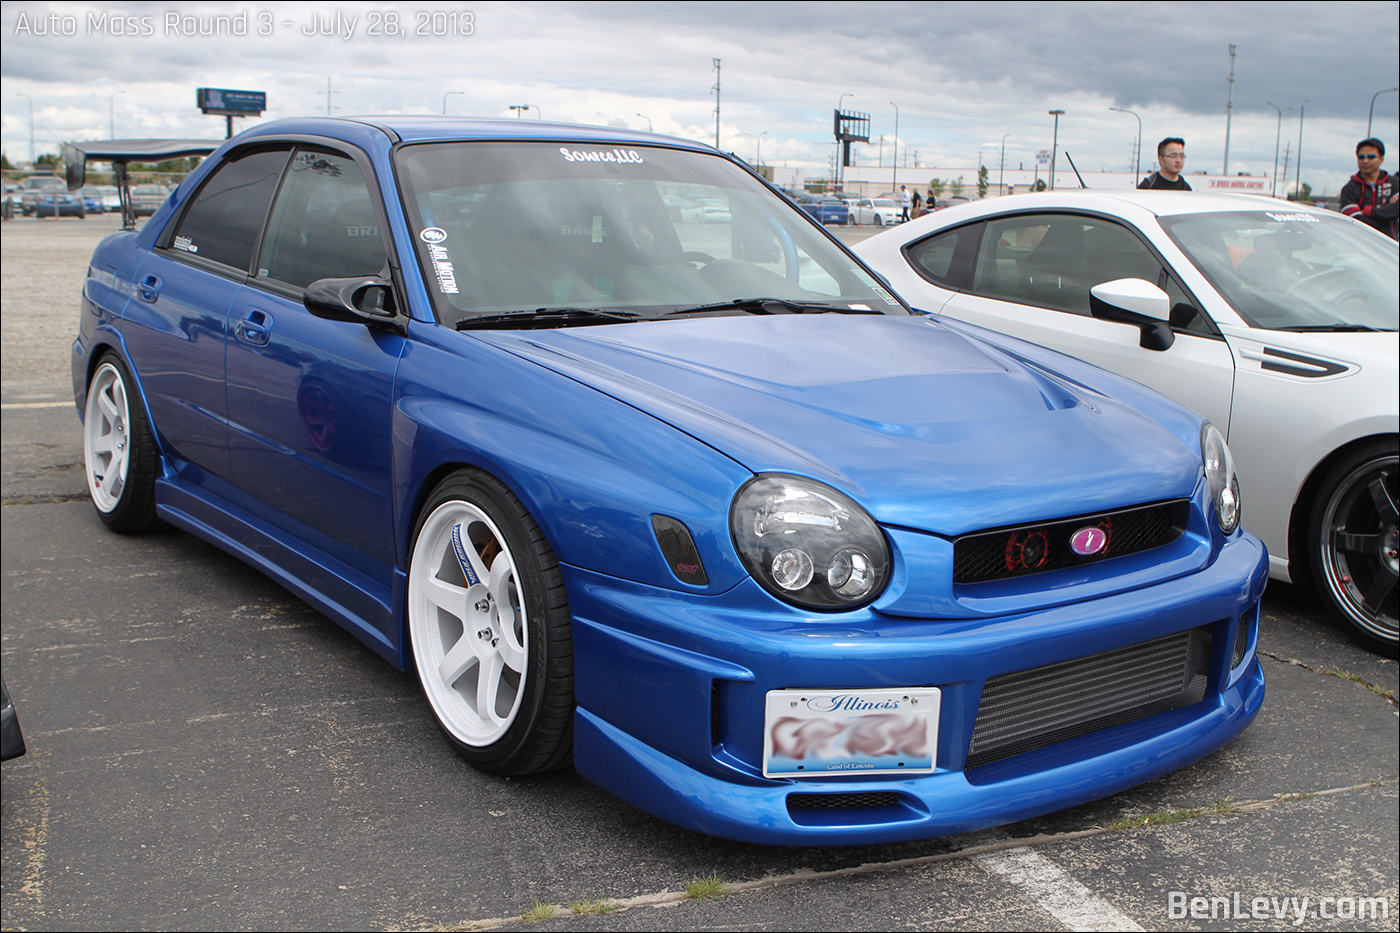 Blue Subaru WRX